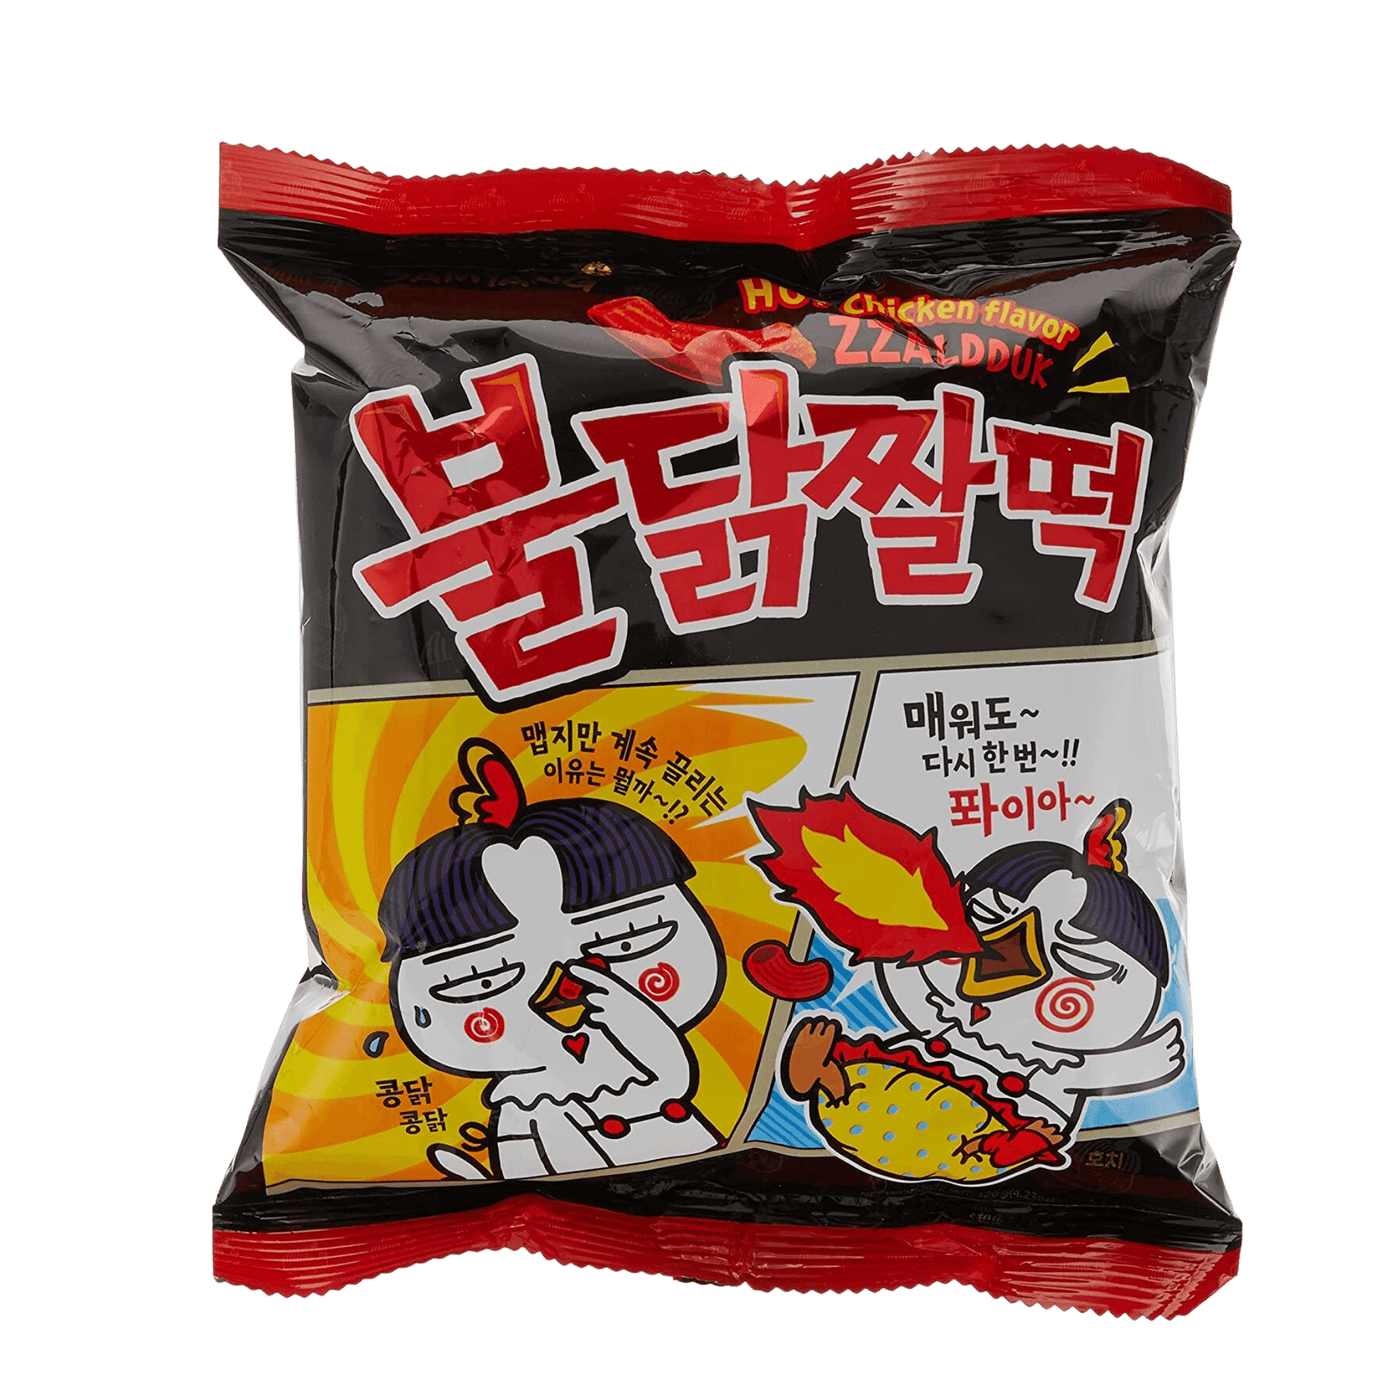 Samyang – Zzalduk Hot Chicken Flavor Snack (120g)